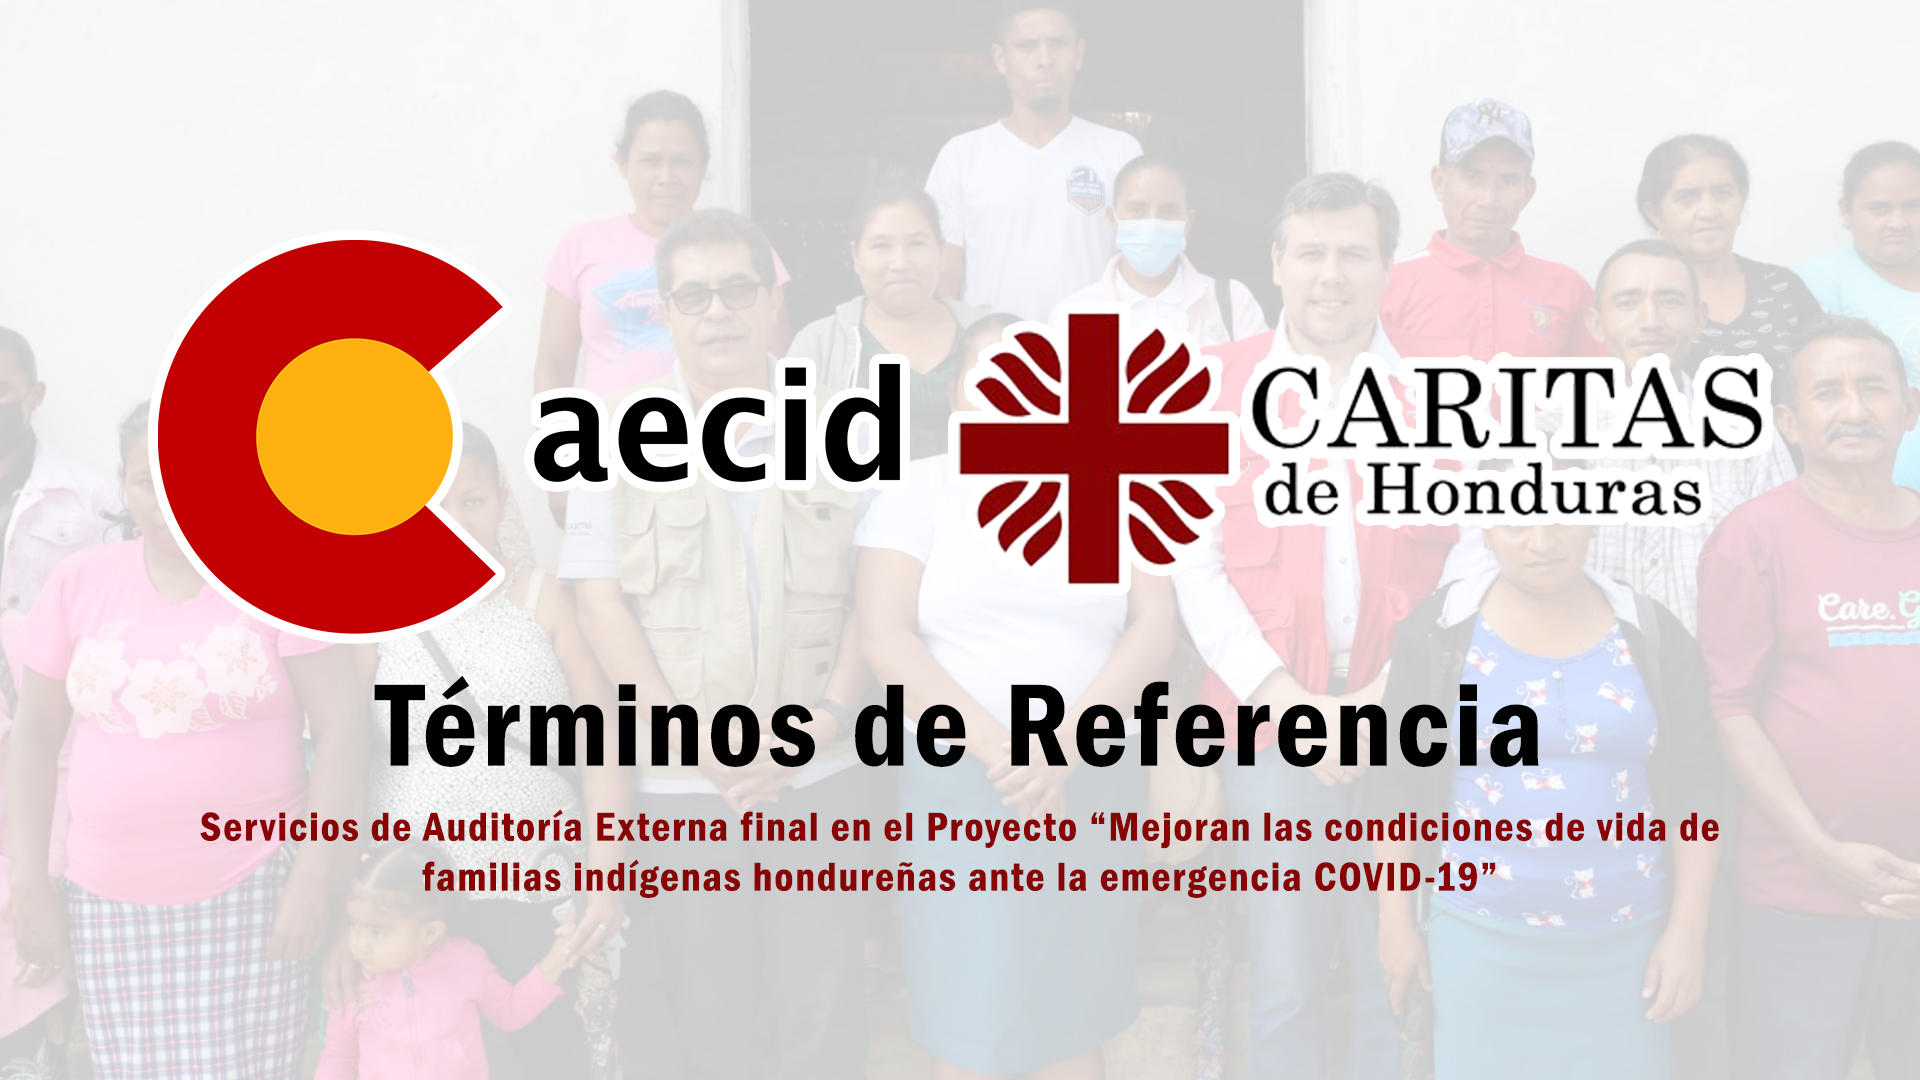 TDRs para contratación de los servicios de Auditoría Externa final en el Proyecto “Mejoran las condiciones de vida de familias indígenas hondureñas ante la emergencia COVID-19”